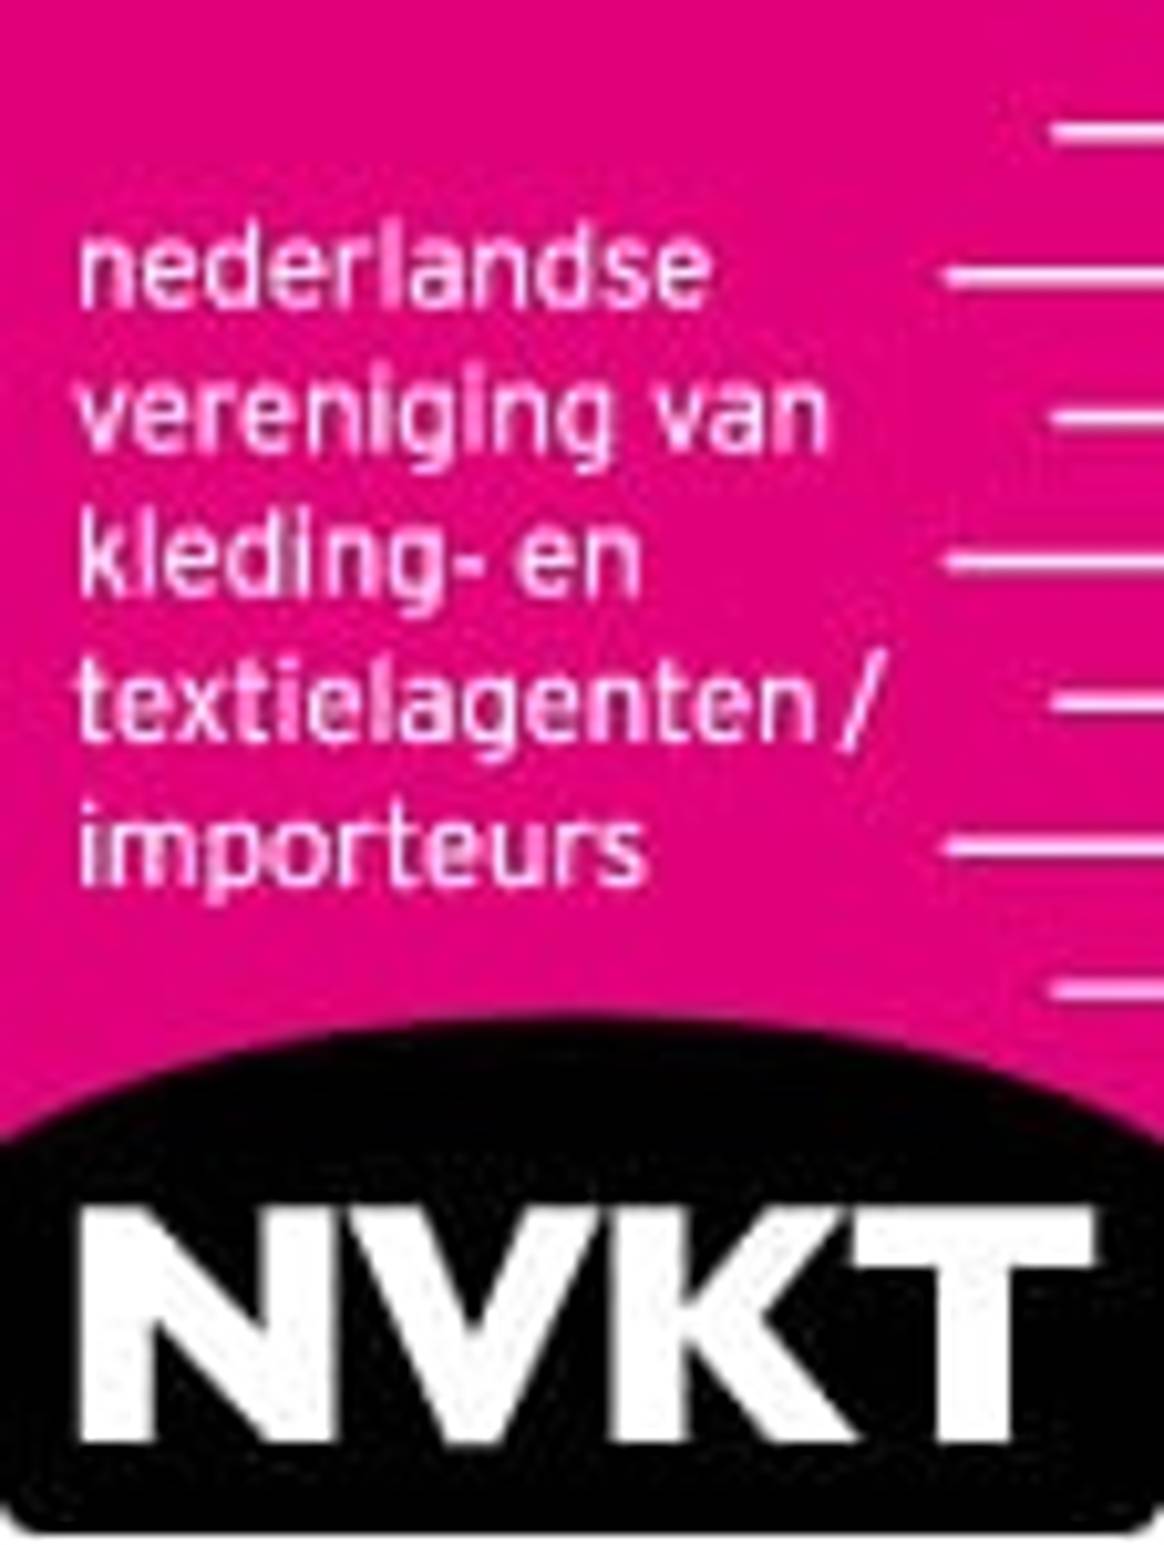 15 en 16 maart stoffenbeurs “Fabric Source” in Brandboxx Almere